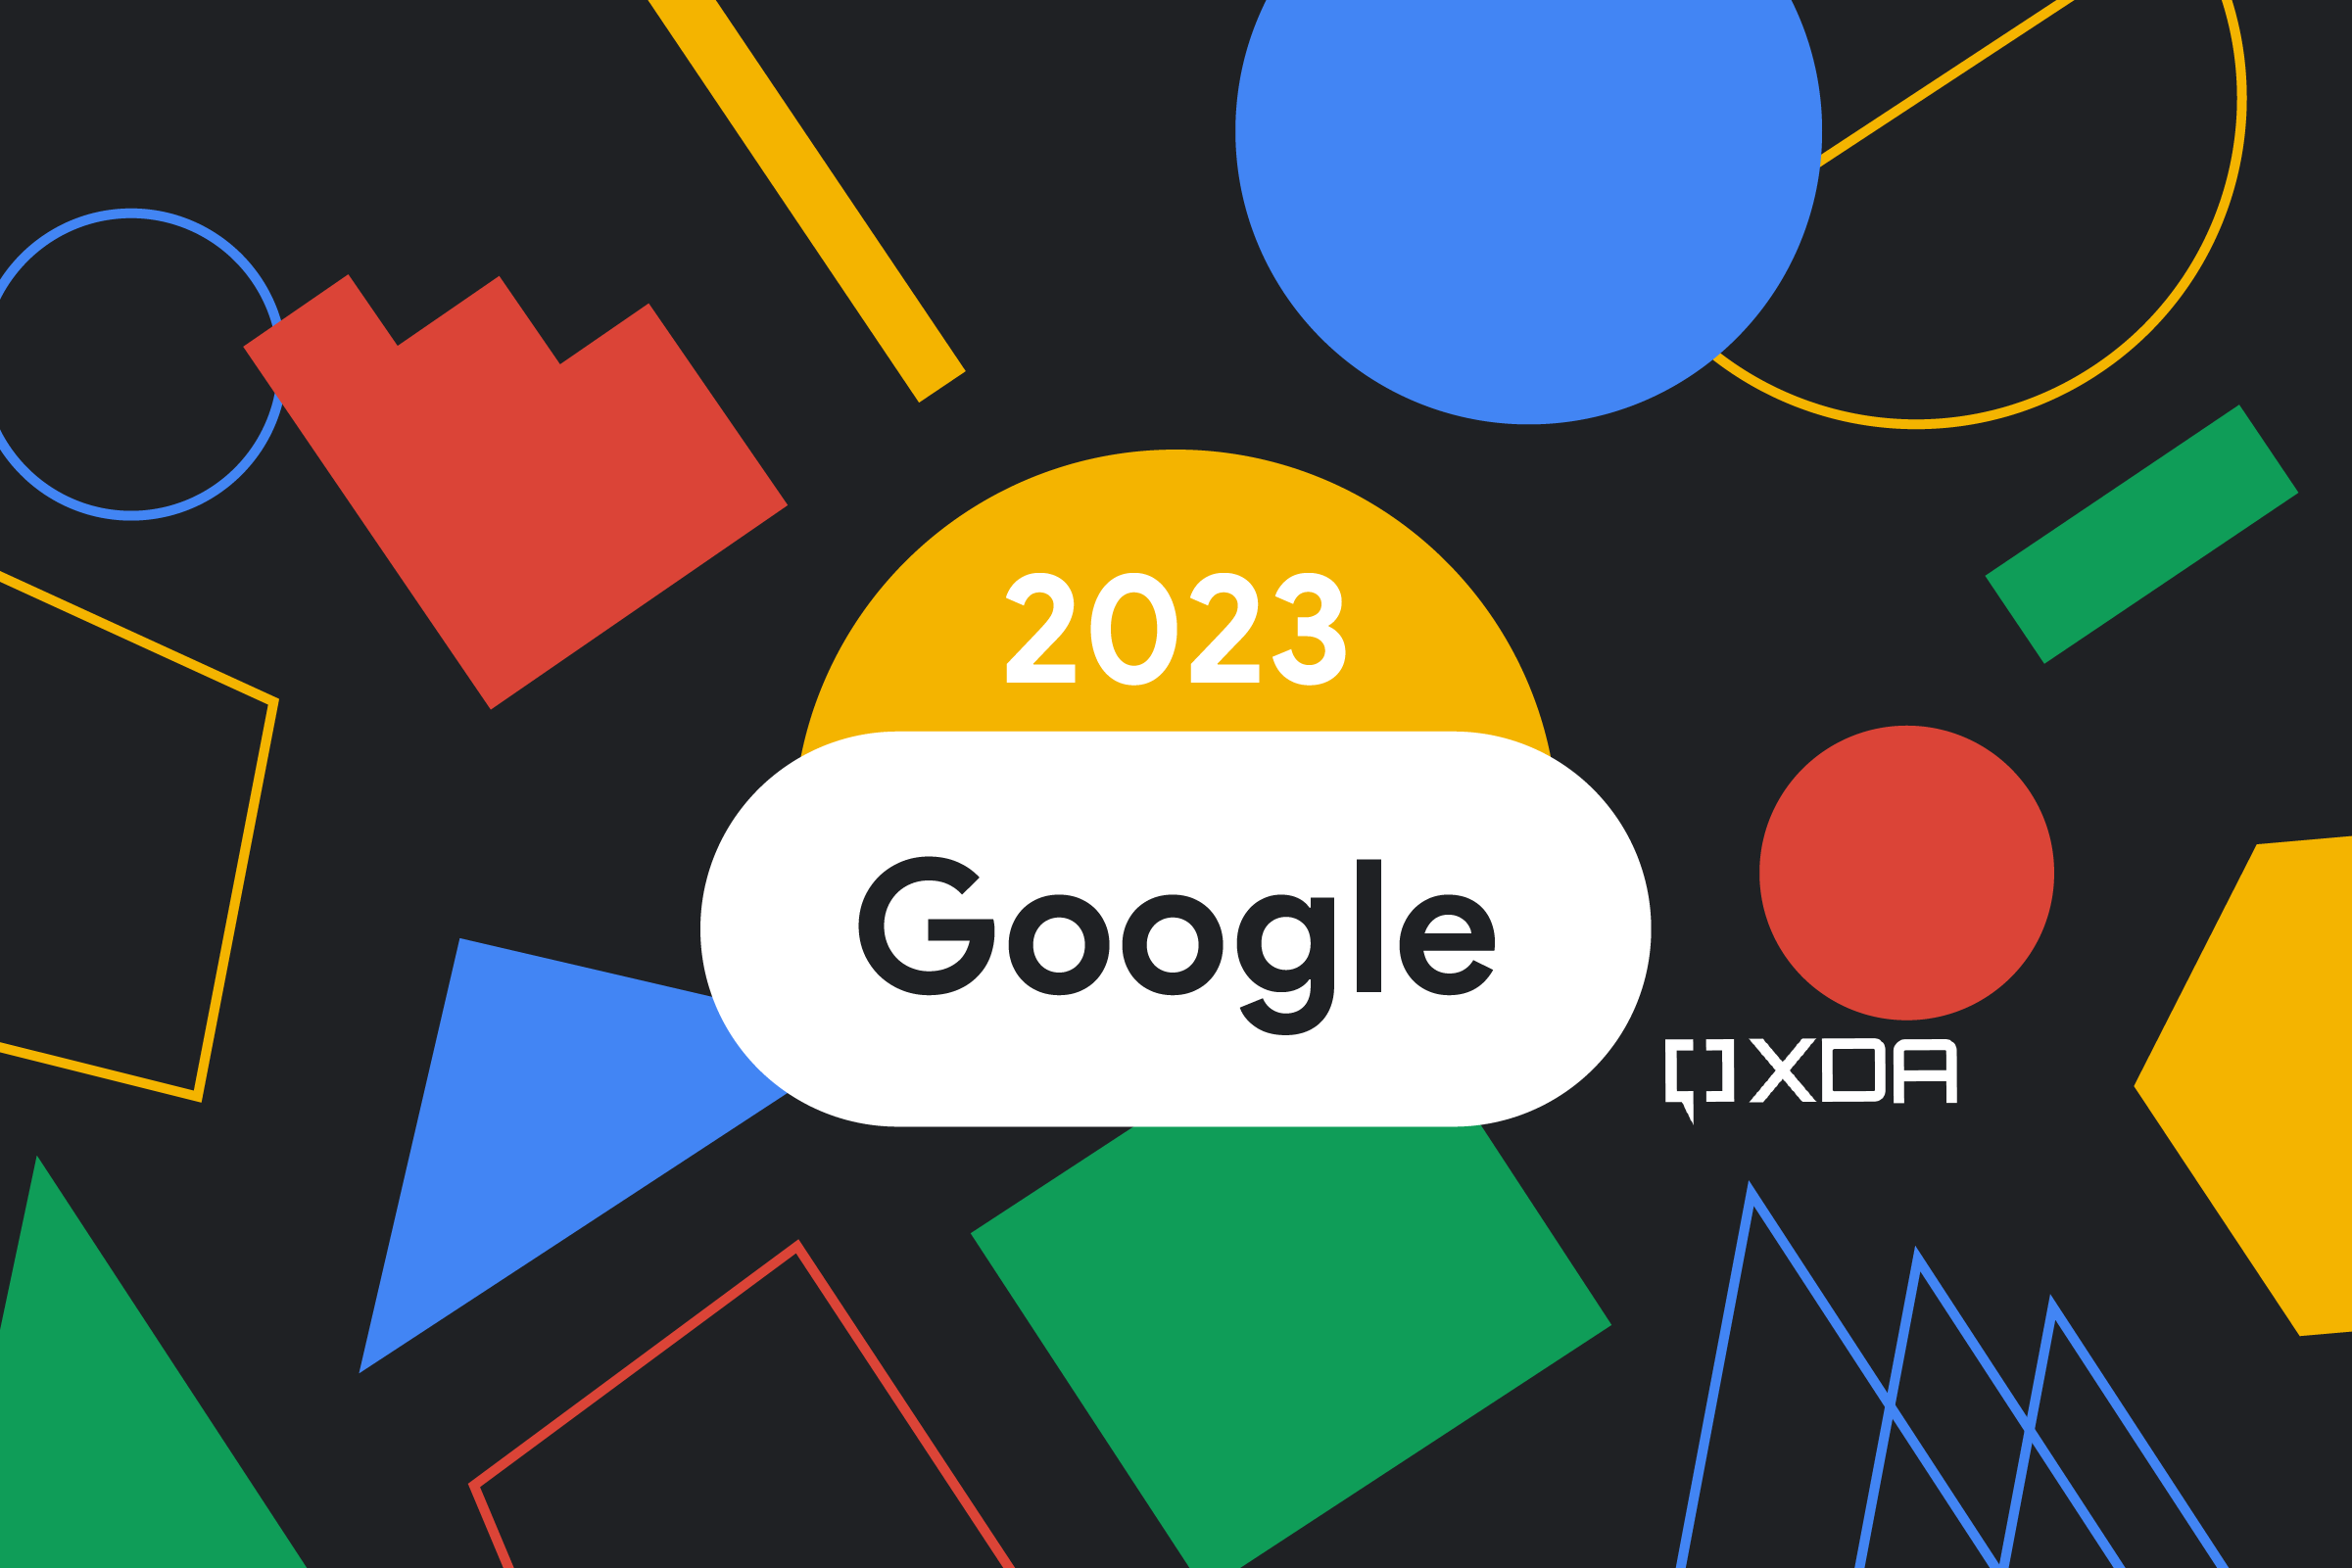 Google in 2023